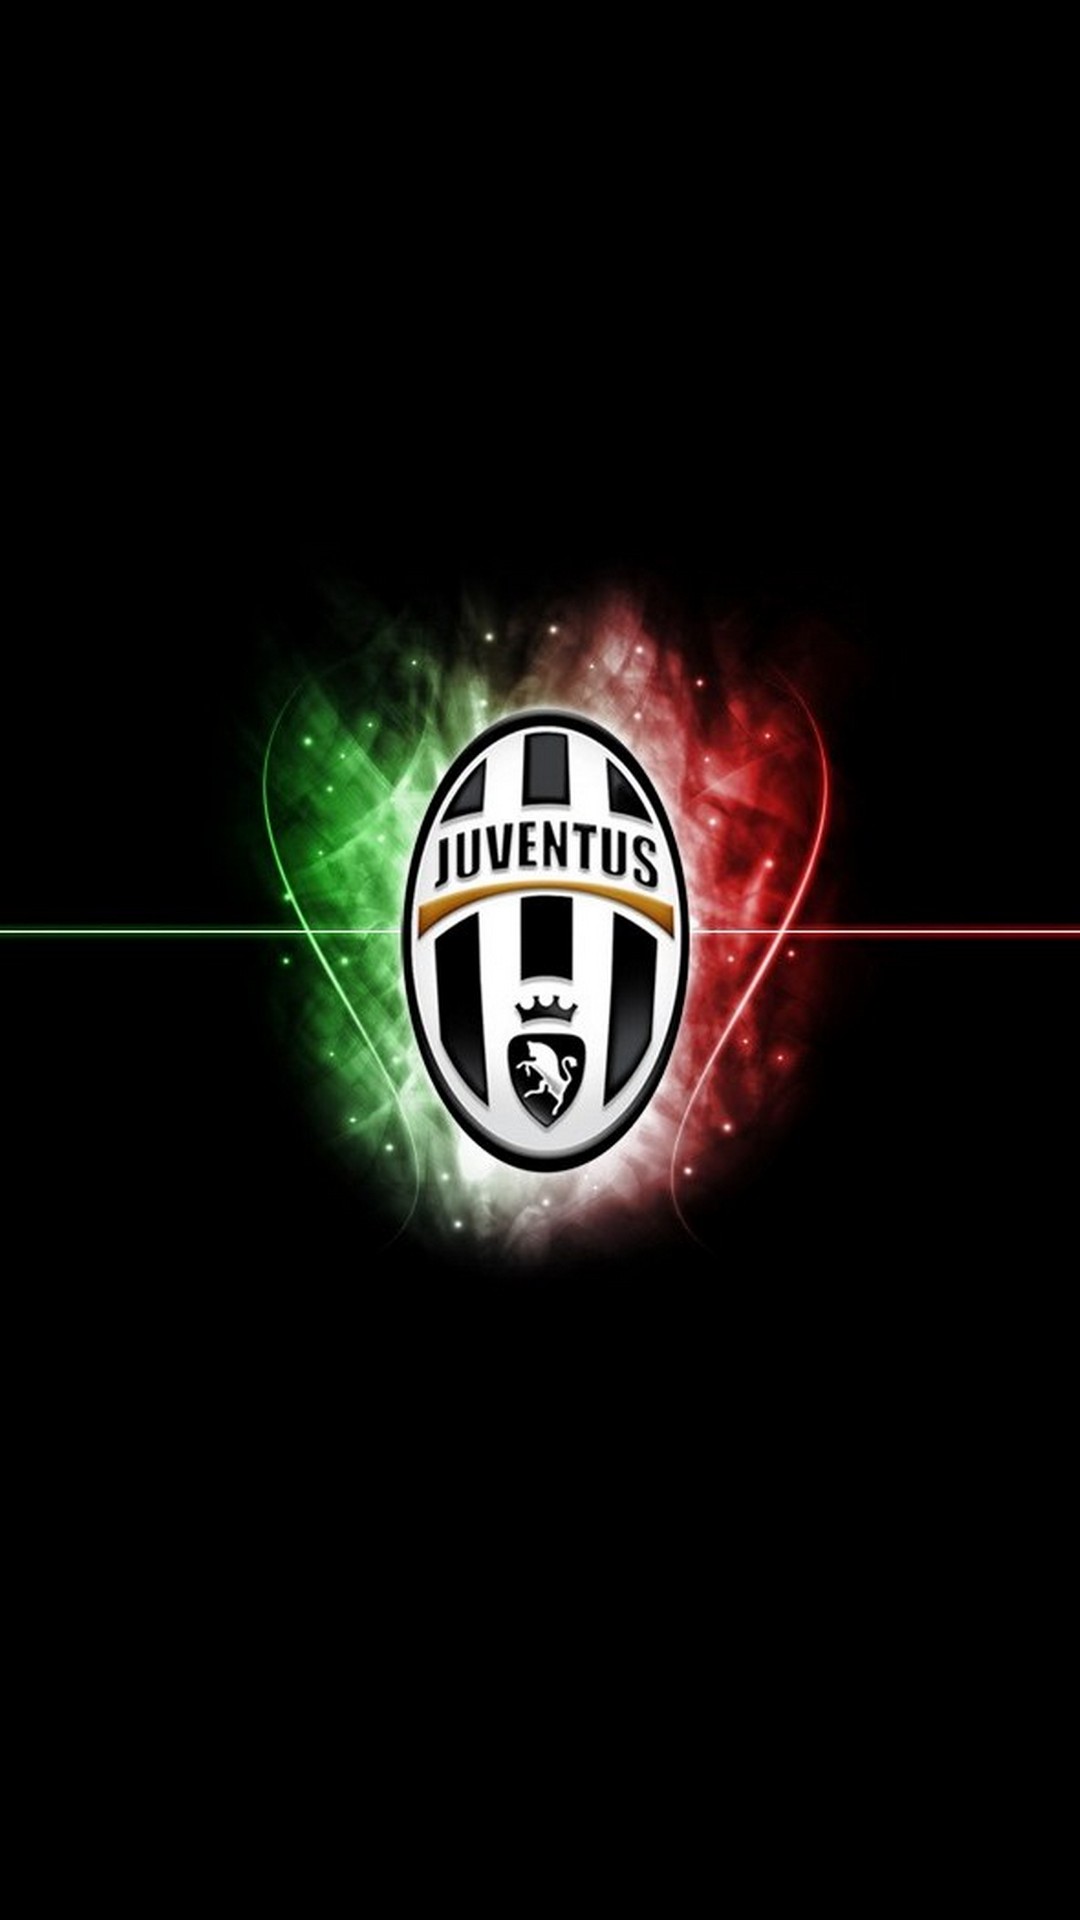 Juventus Logo iPhone Wallpaper resolution 1080x1920